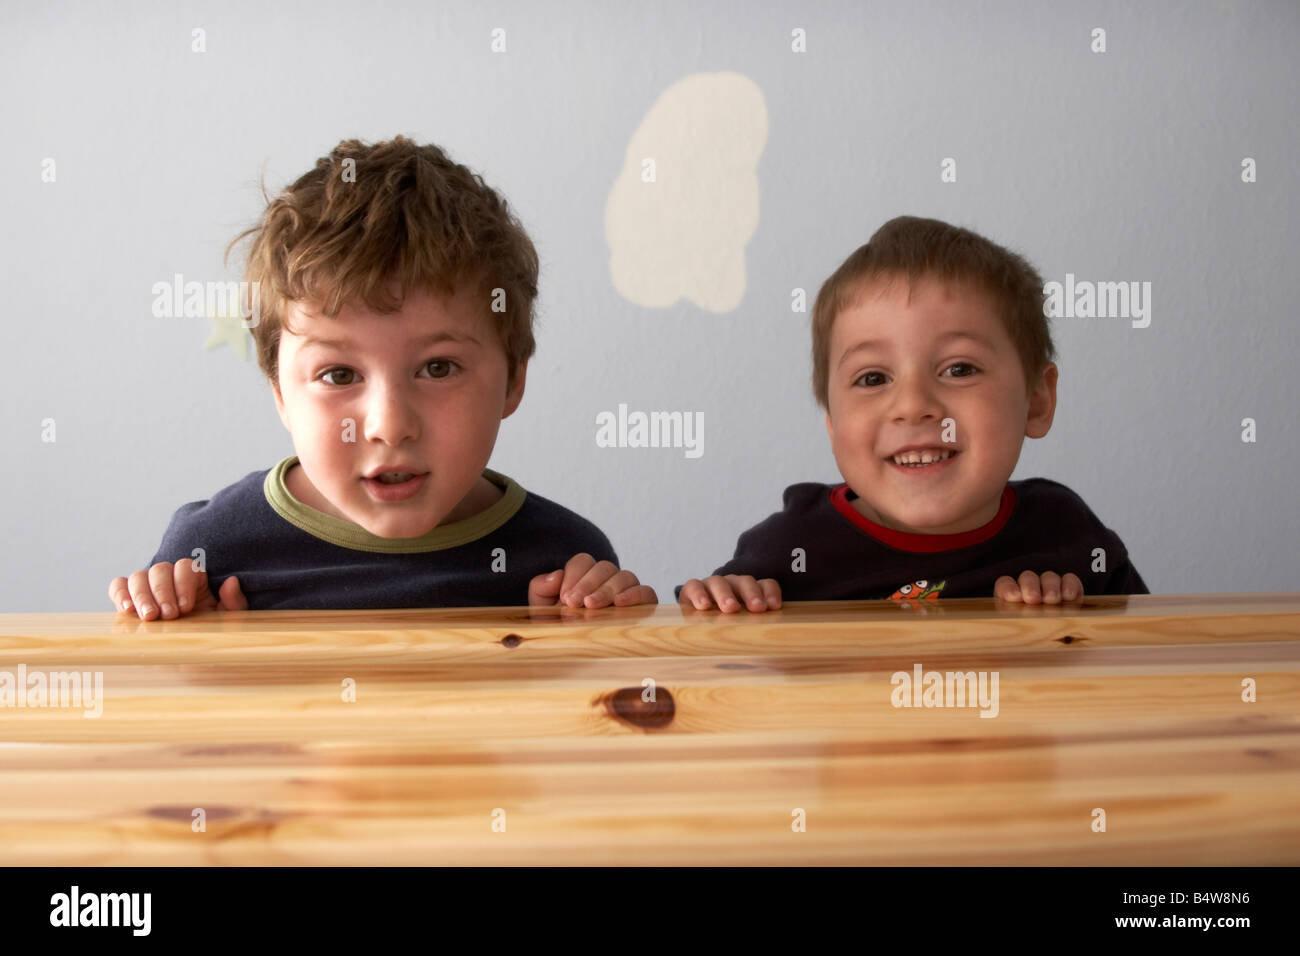 Deux jeunes garçons enfants frères à par-dessus le bord d'un lit de NAOH CJWH drôle amusant humour bande dessinée Banque D'Images